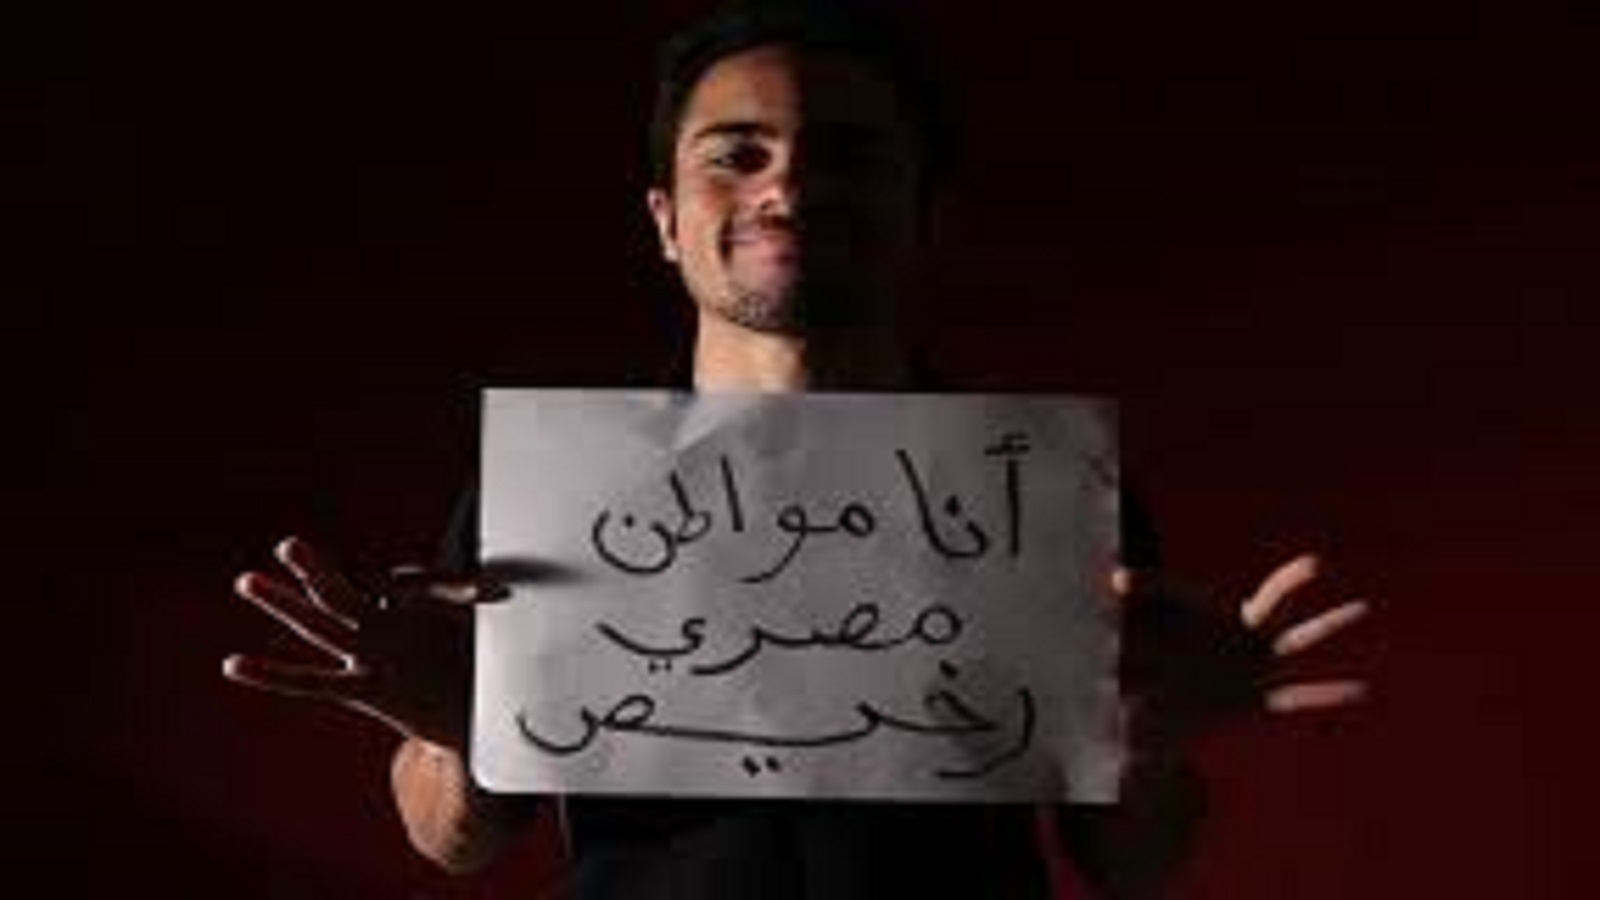 مغردون مصريون: "شادي أبو زيد فين؟"